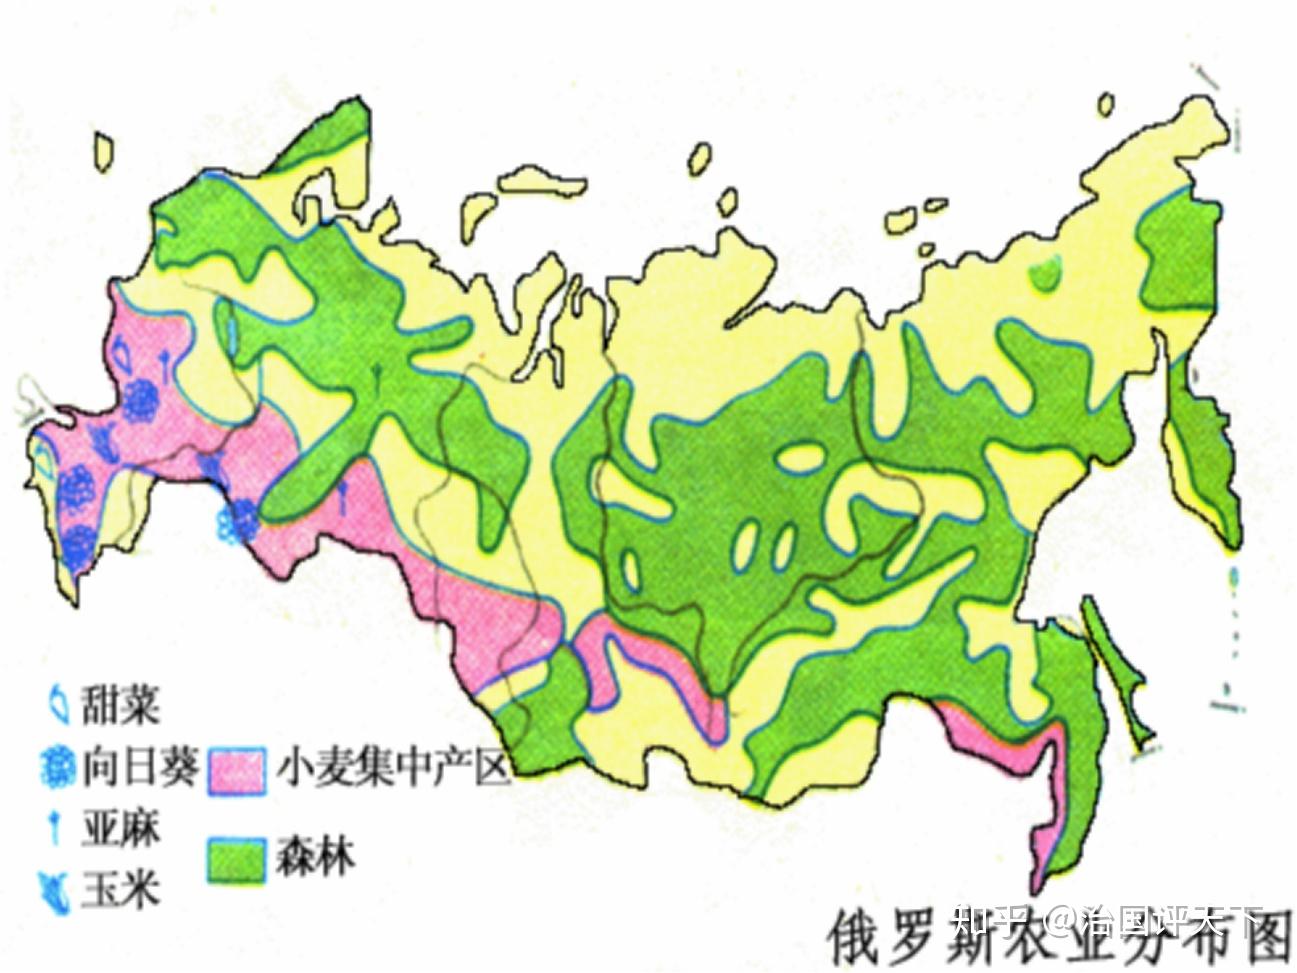 来源于地理教育网的俄罗斯农业分布图;森林区域确实广大